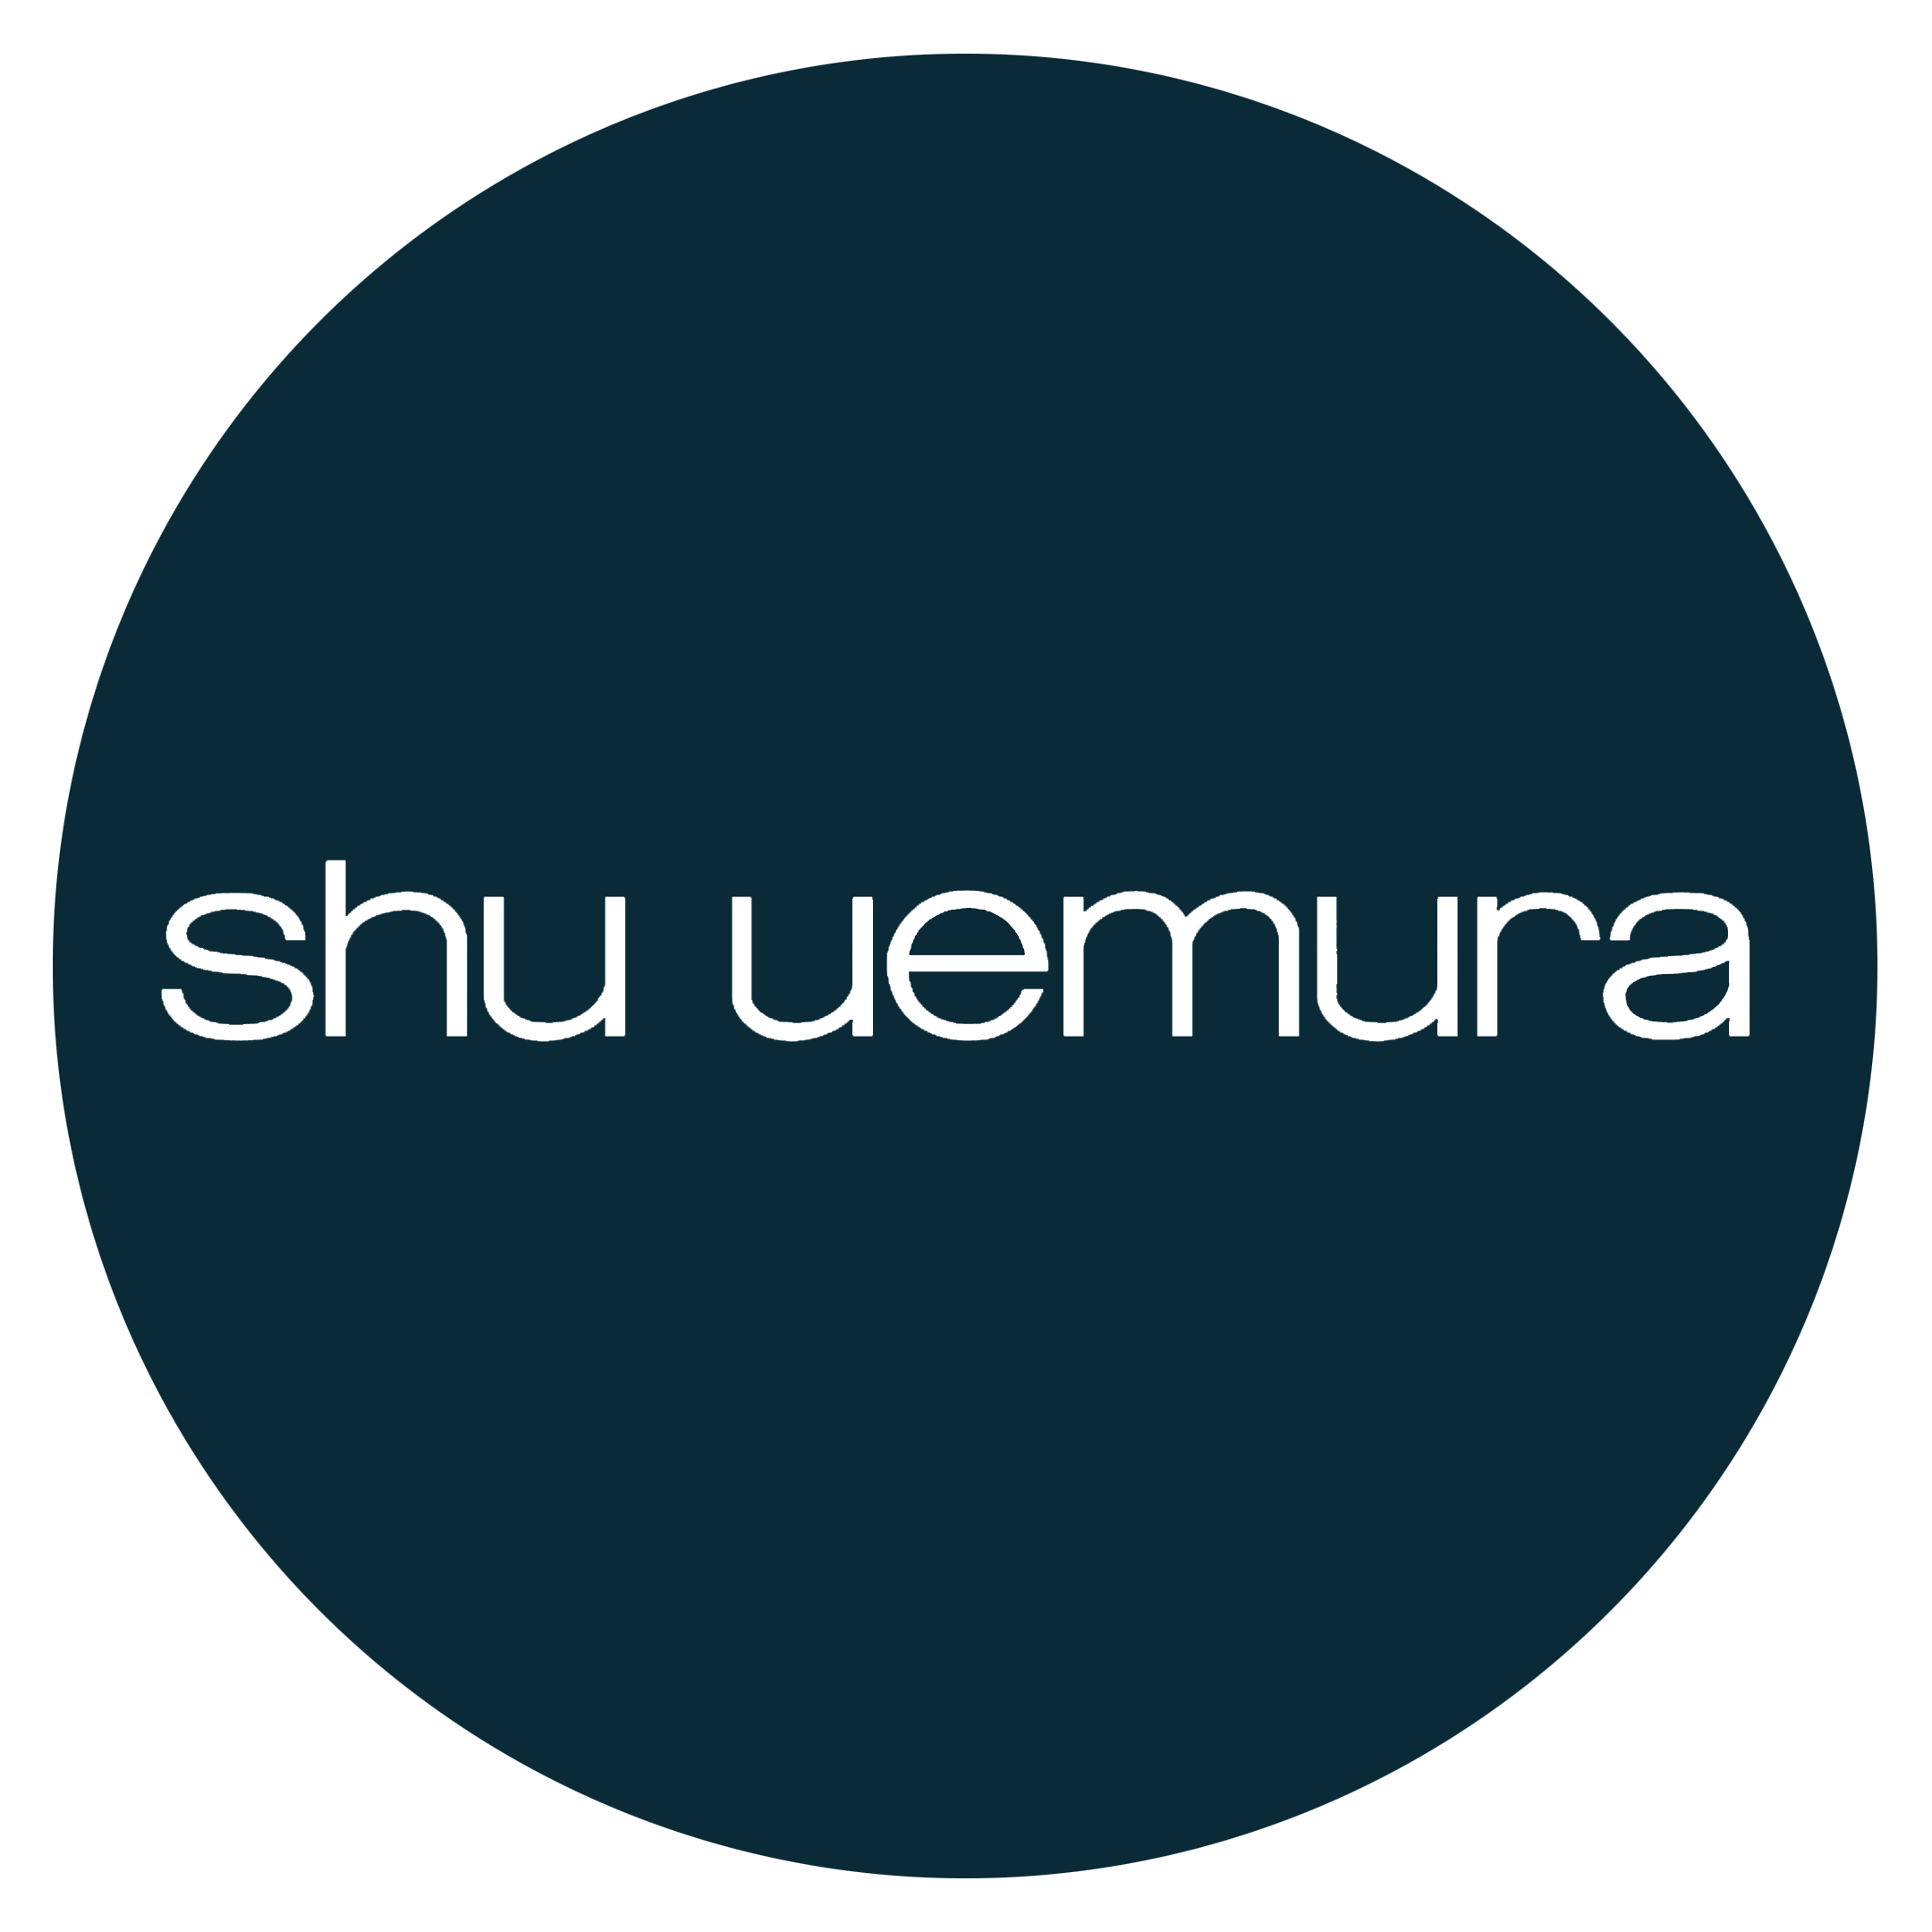 Shu Uemura